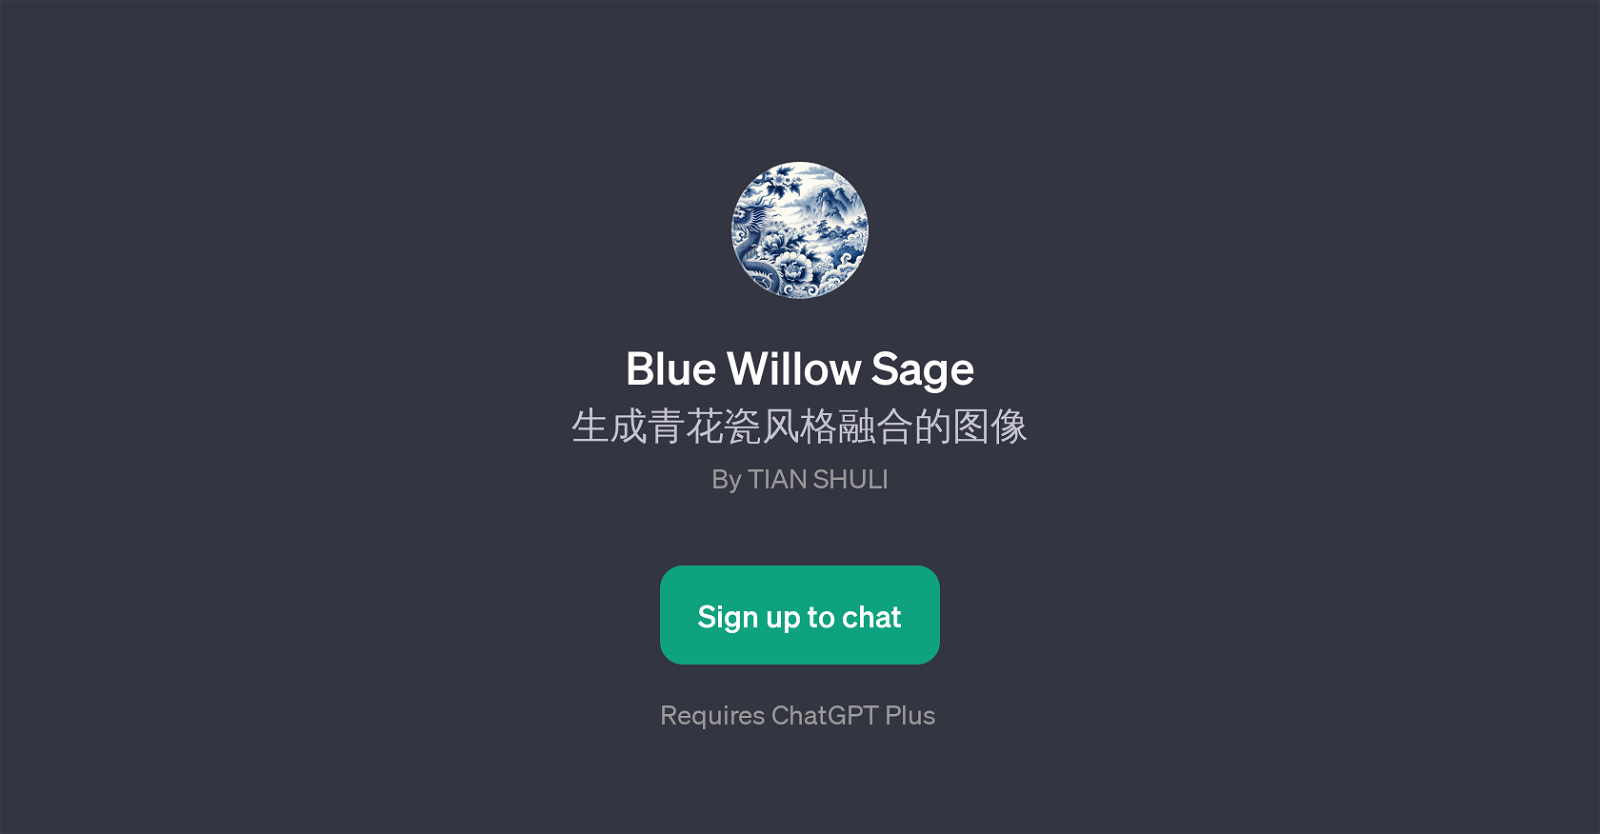 Blue Willow Sage website